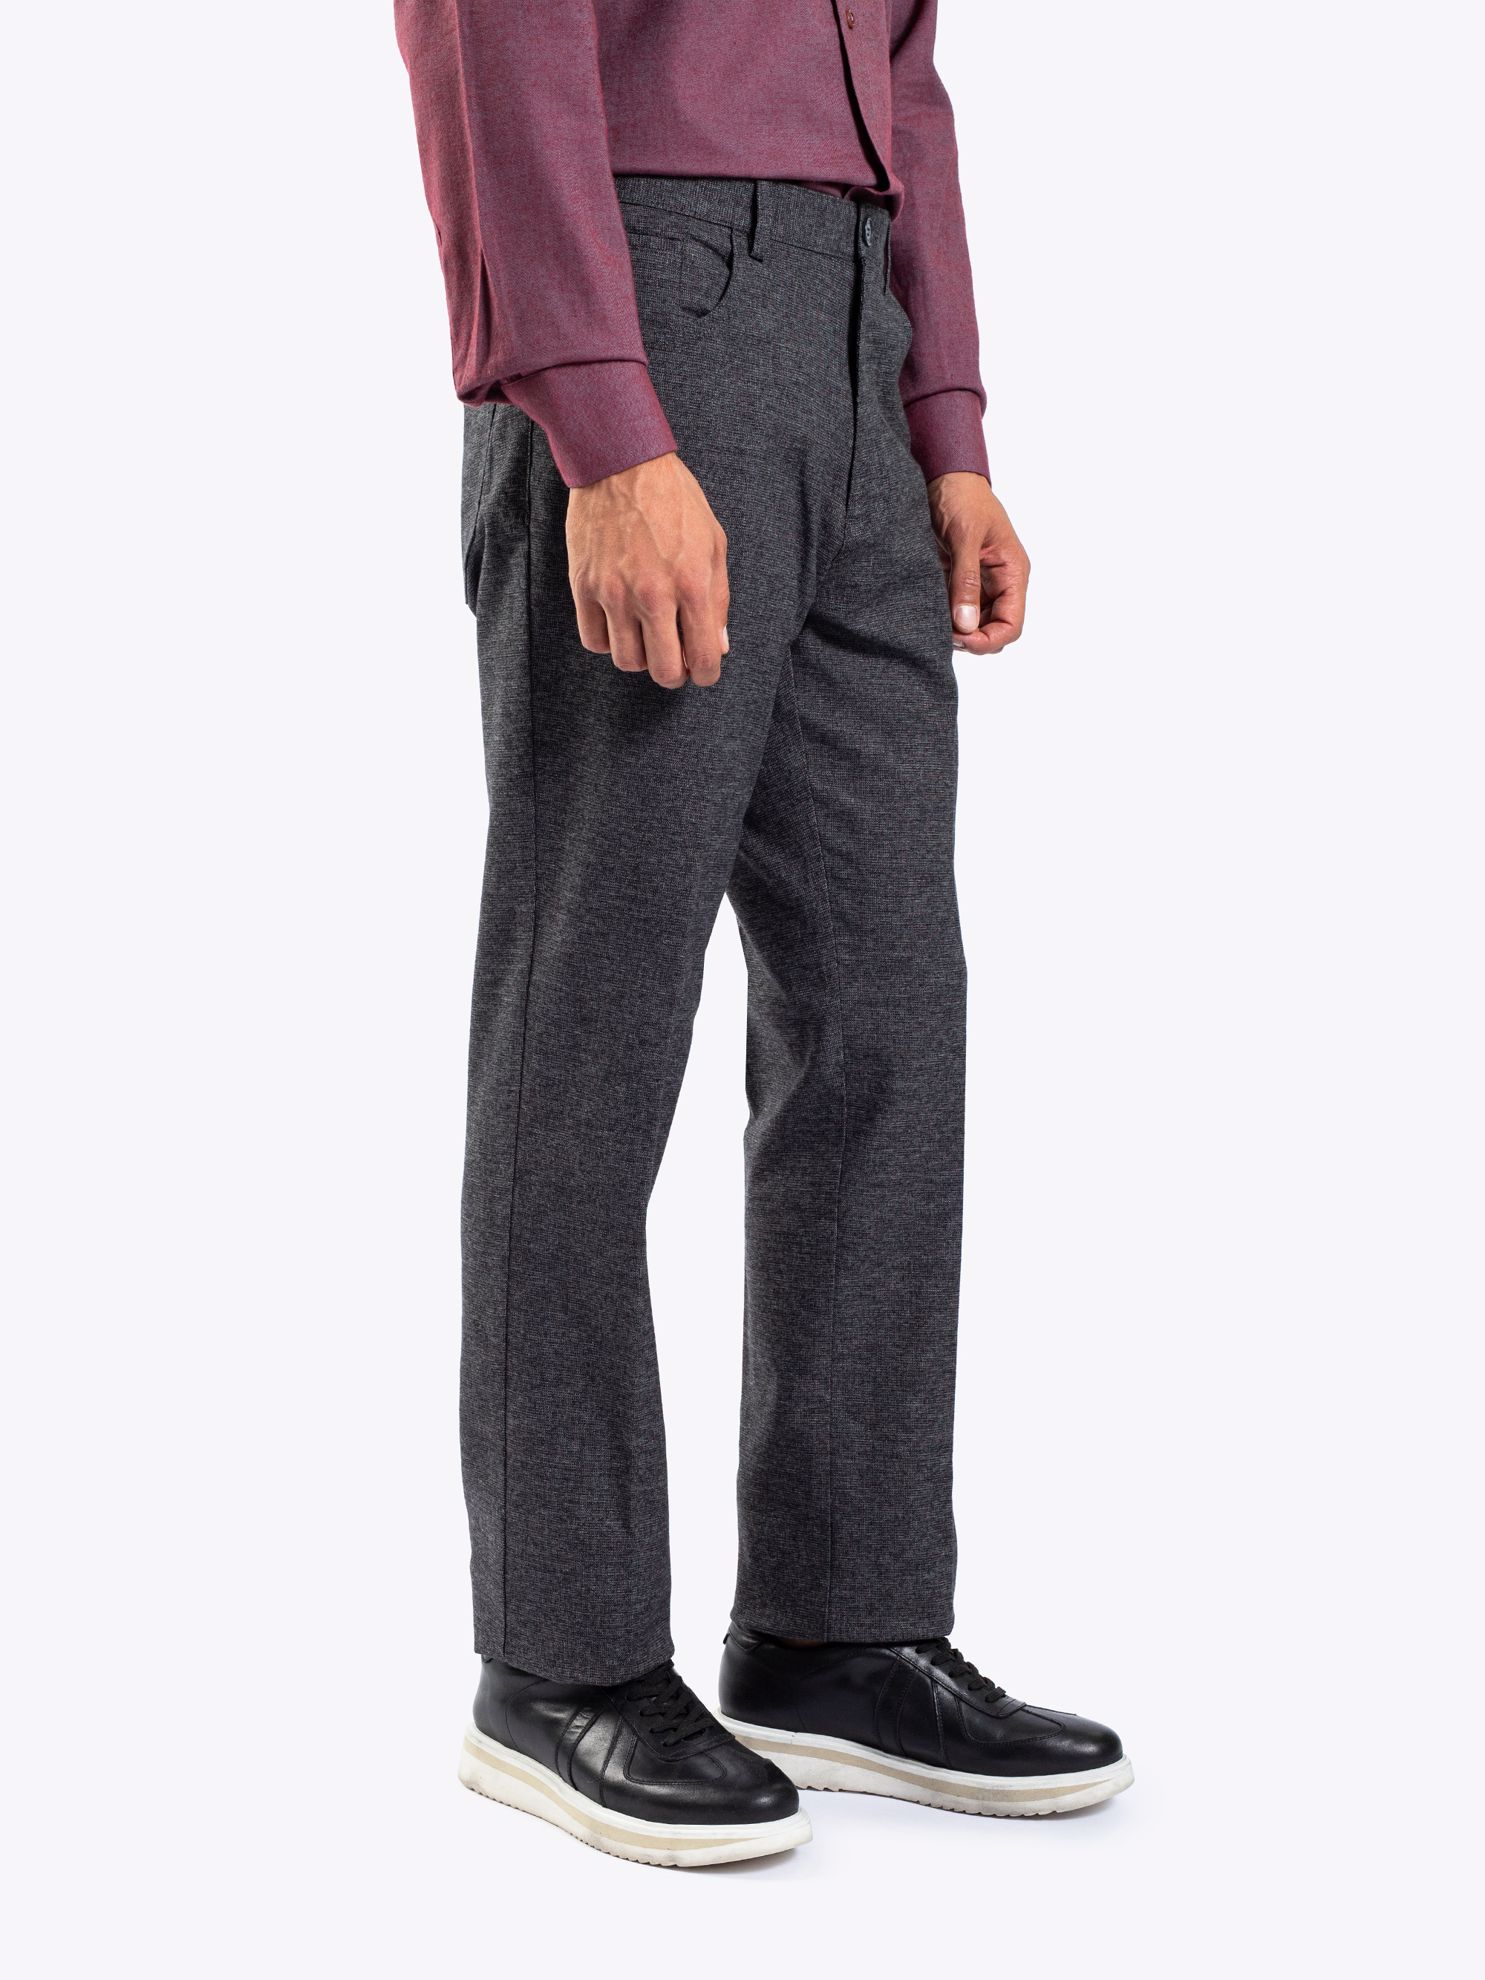 Karaca Erkek 4 Drop Pantolon-Gri. ürün görseli